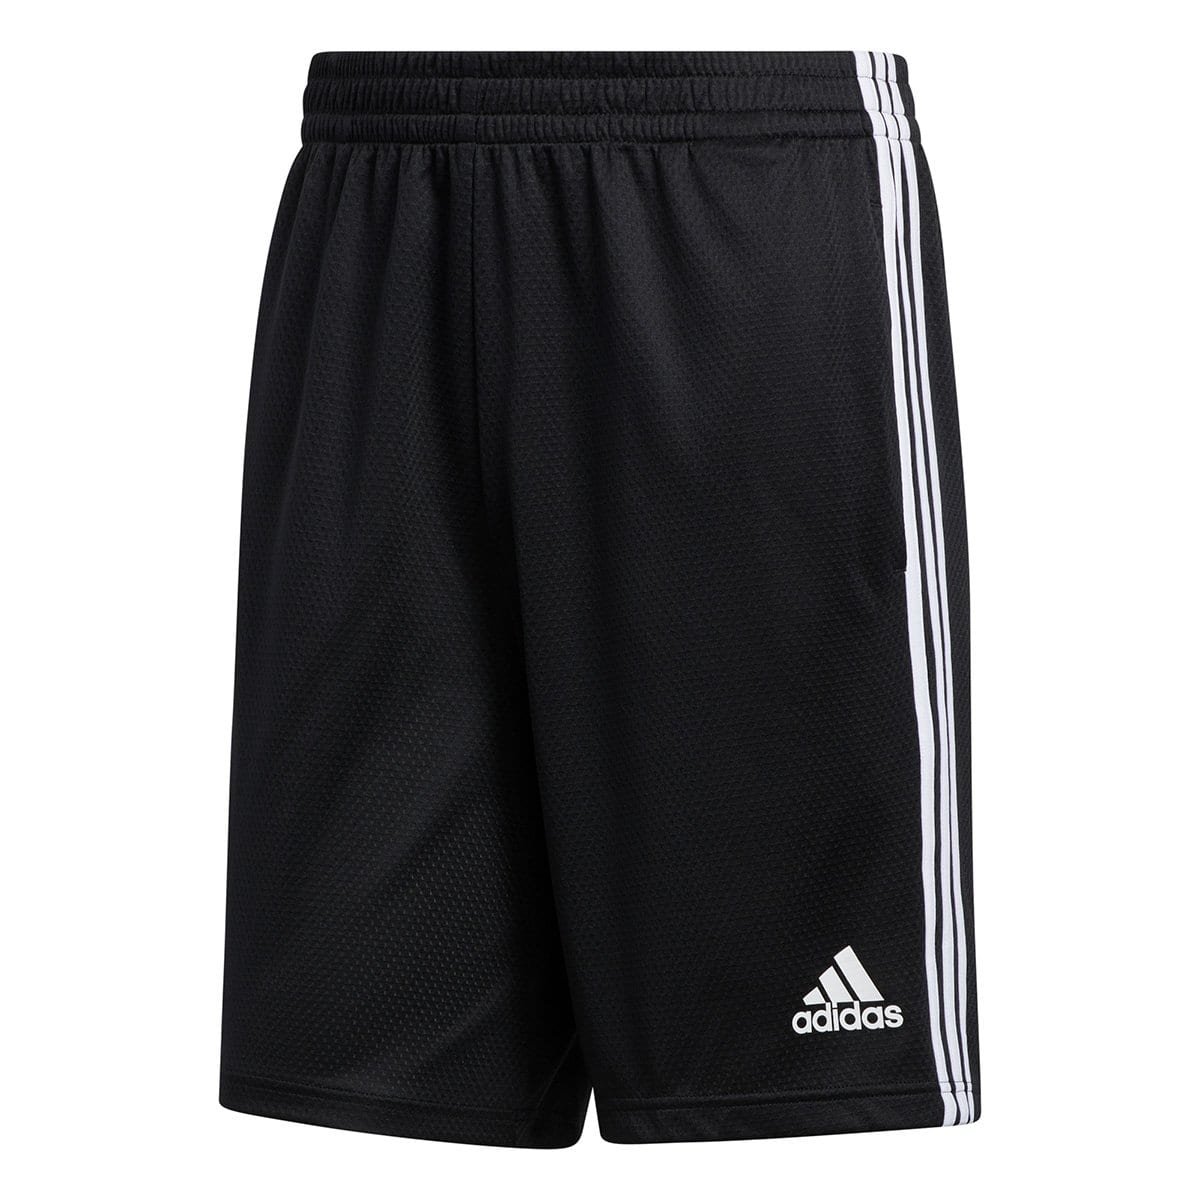 Short Adidas 3S Masculino – Preto+Branco